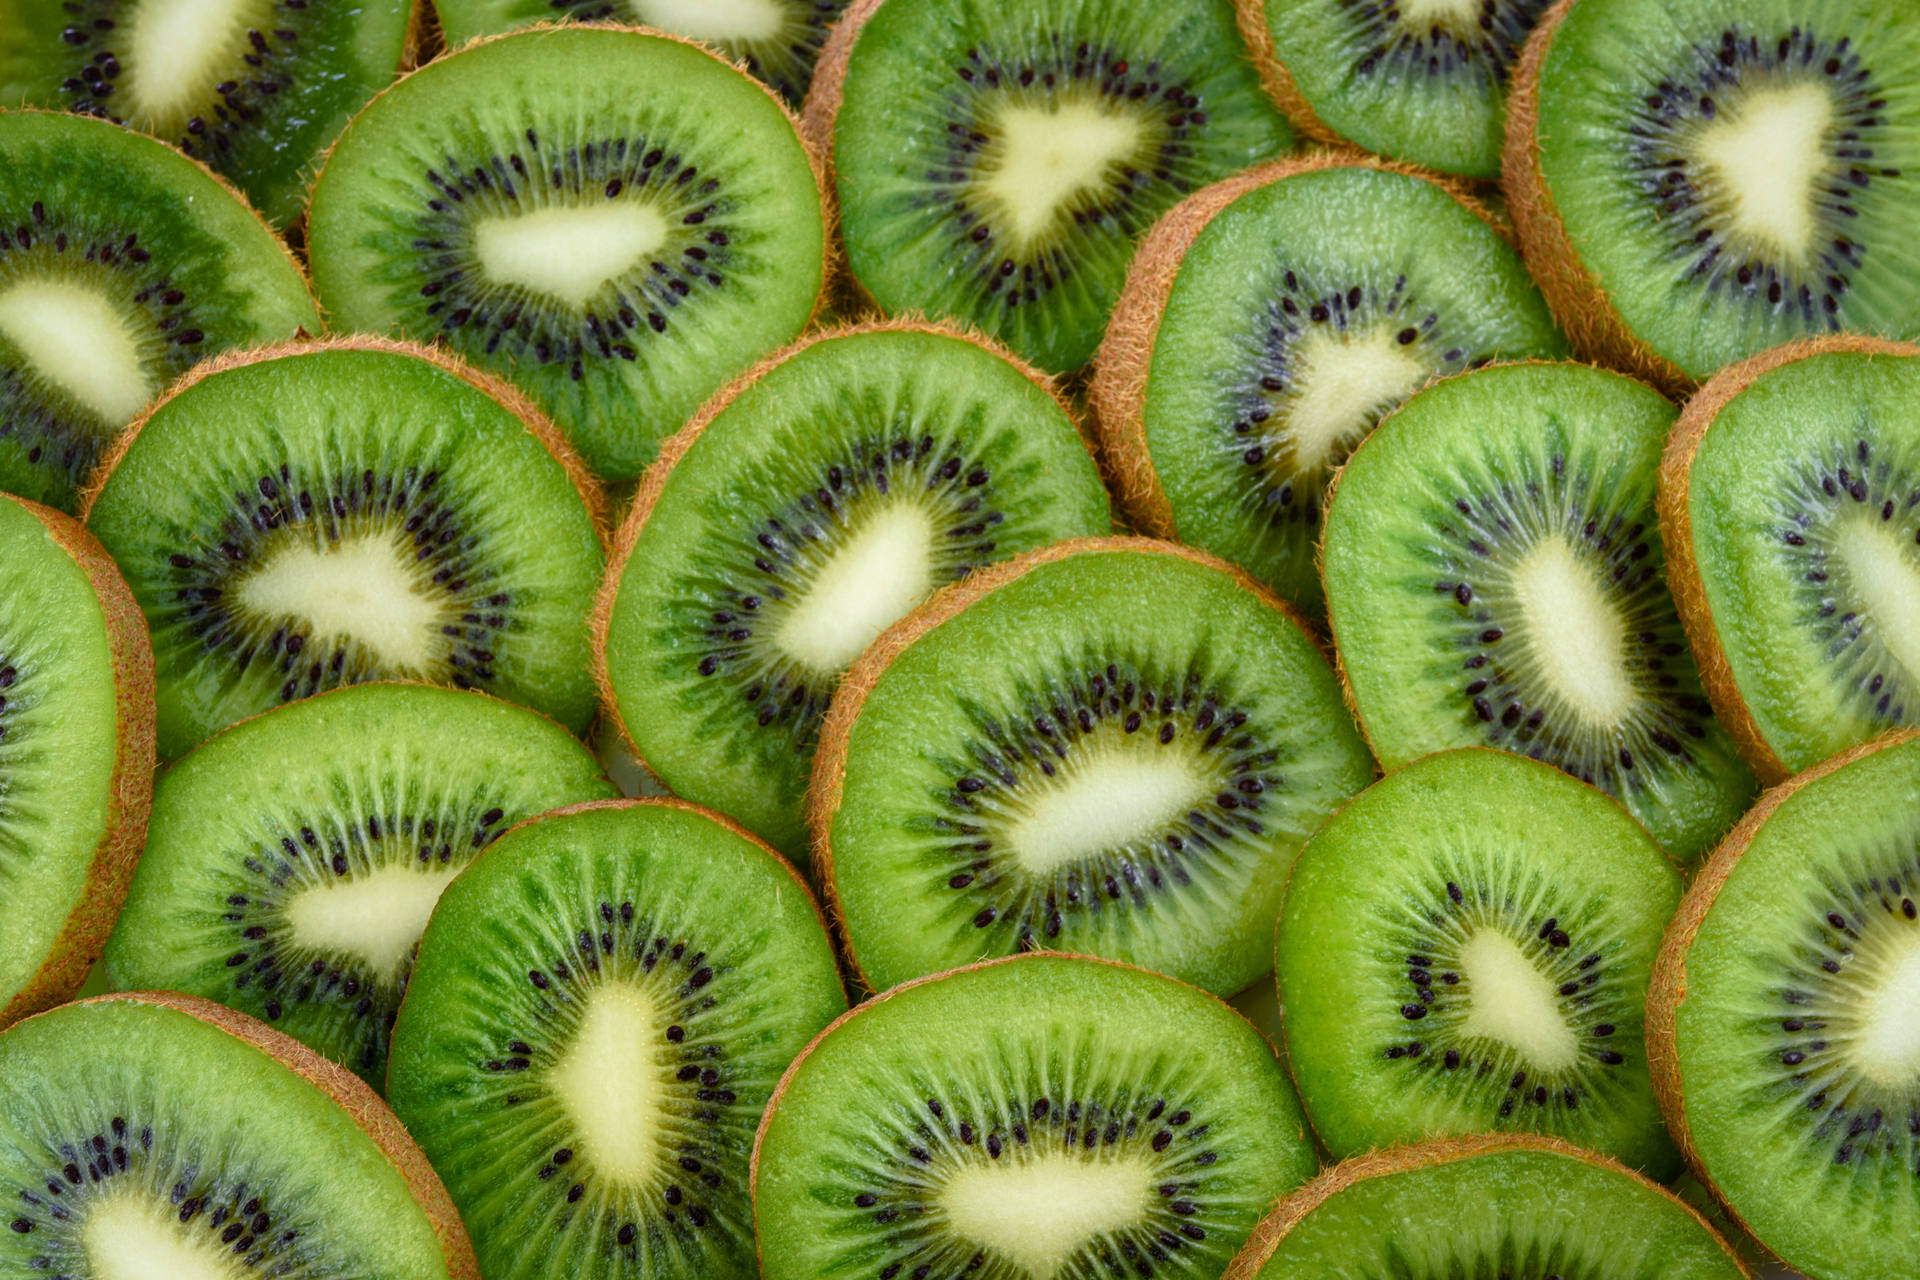 Hijau Kiwi Fruit